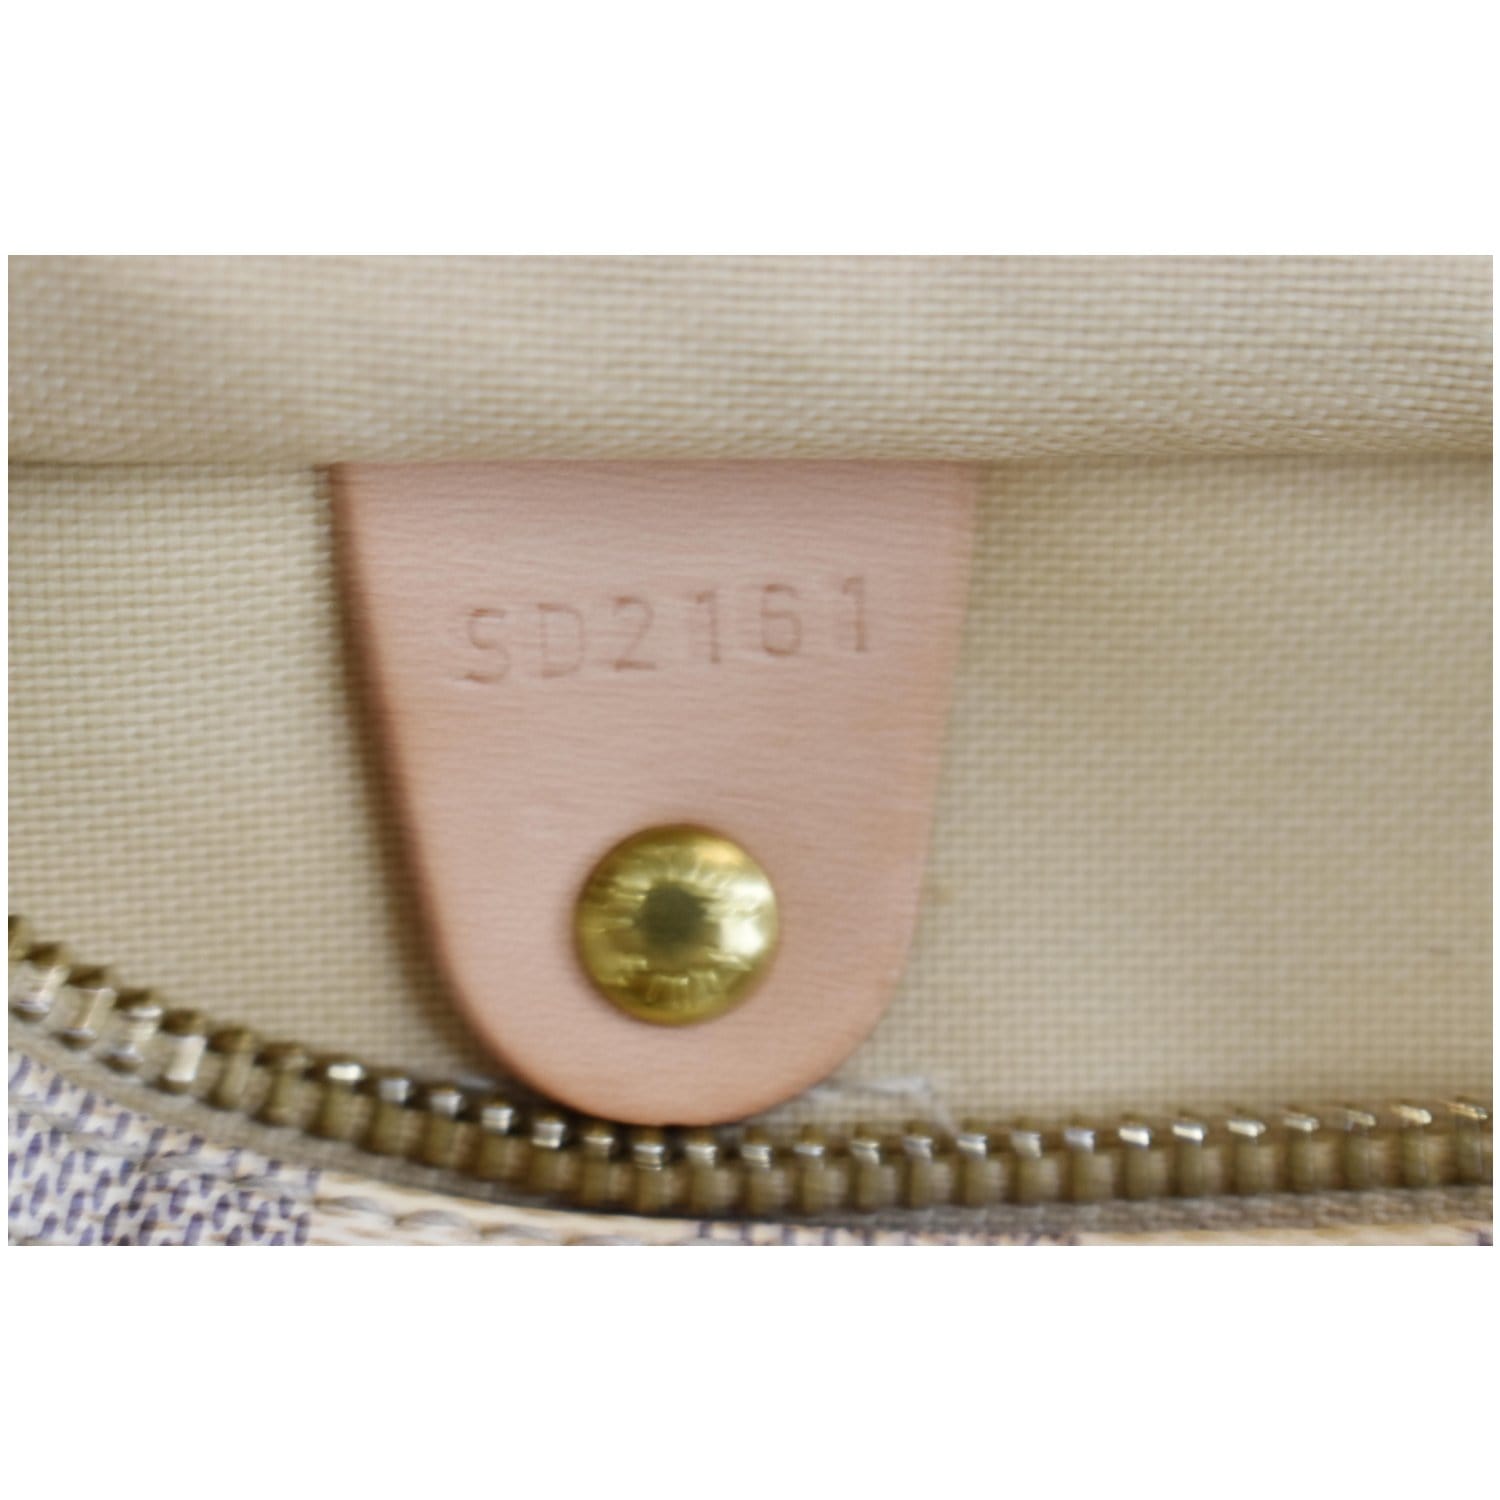 1730-755 Louis Vuitton Speedy 25 Damier Azur SP0038 Condition: 6.5